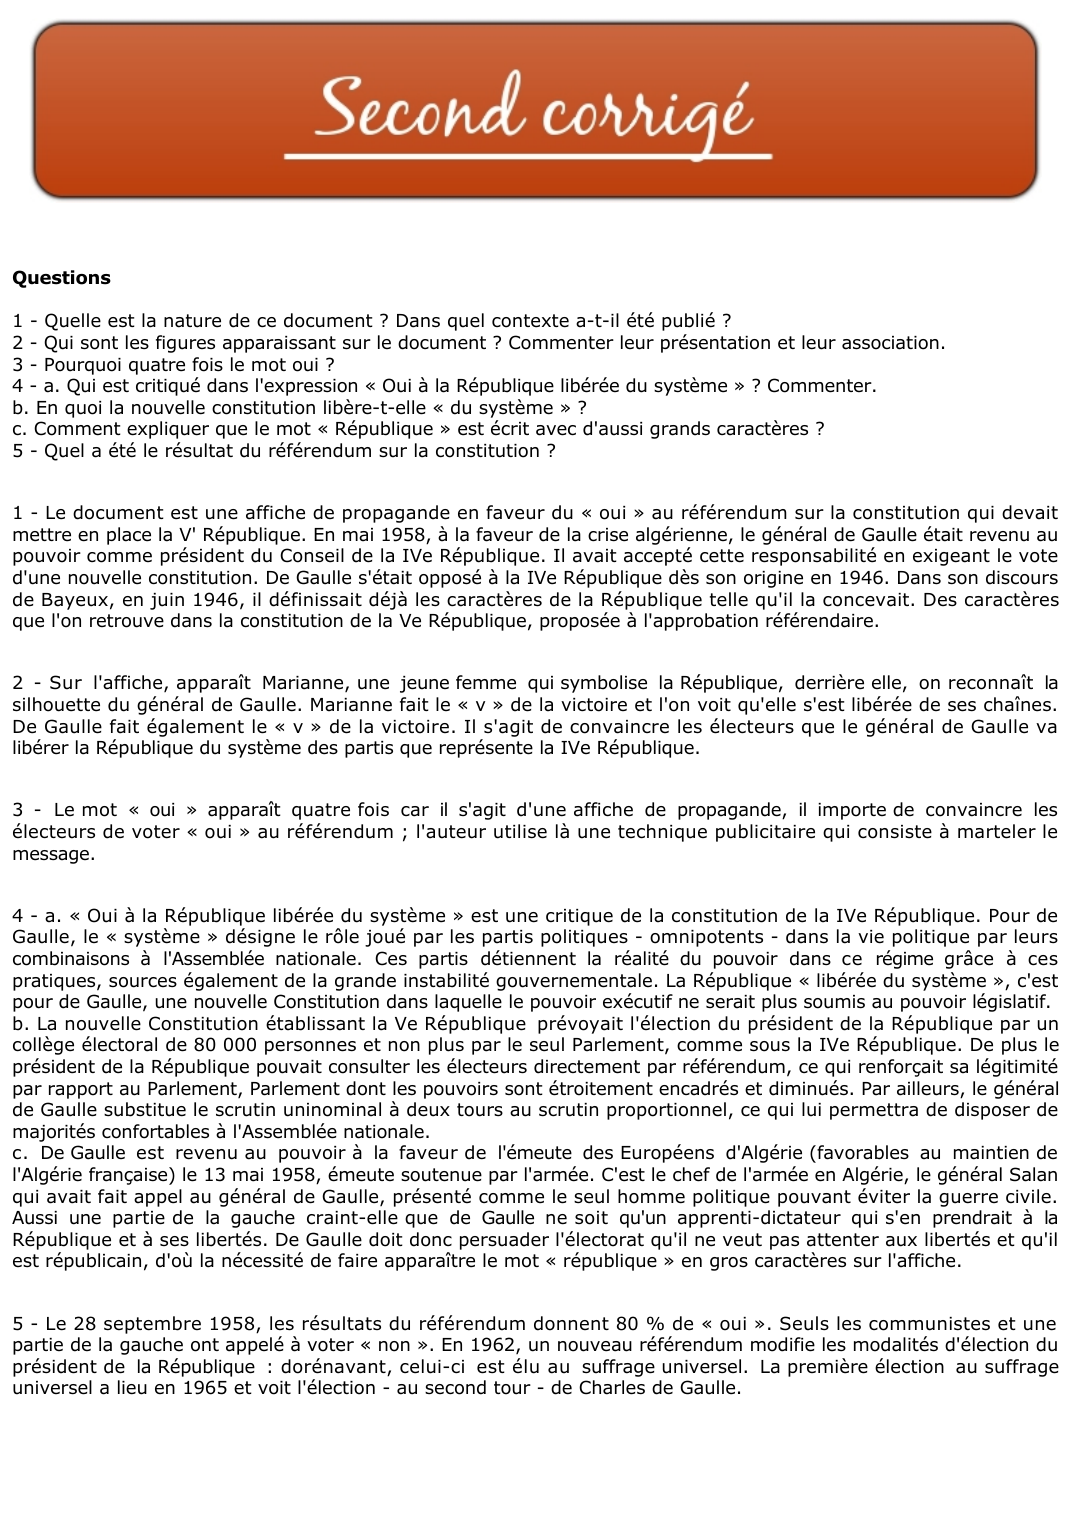 Prévisualisation du document Affiche pour le référendum sur la Constitutionde septembre 1958 (Histoire)